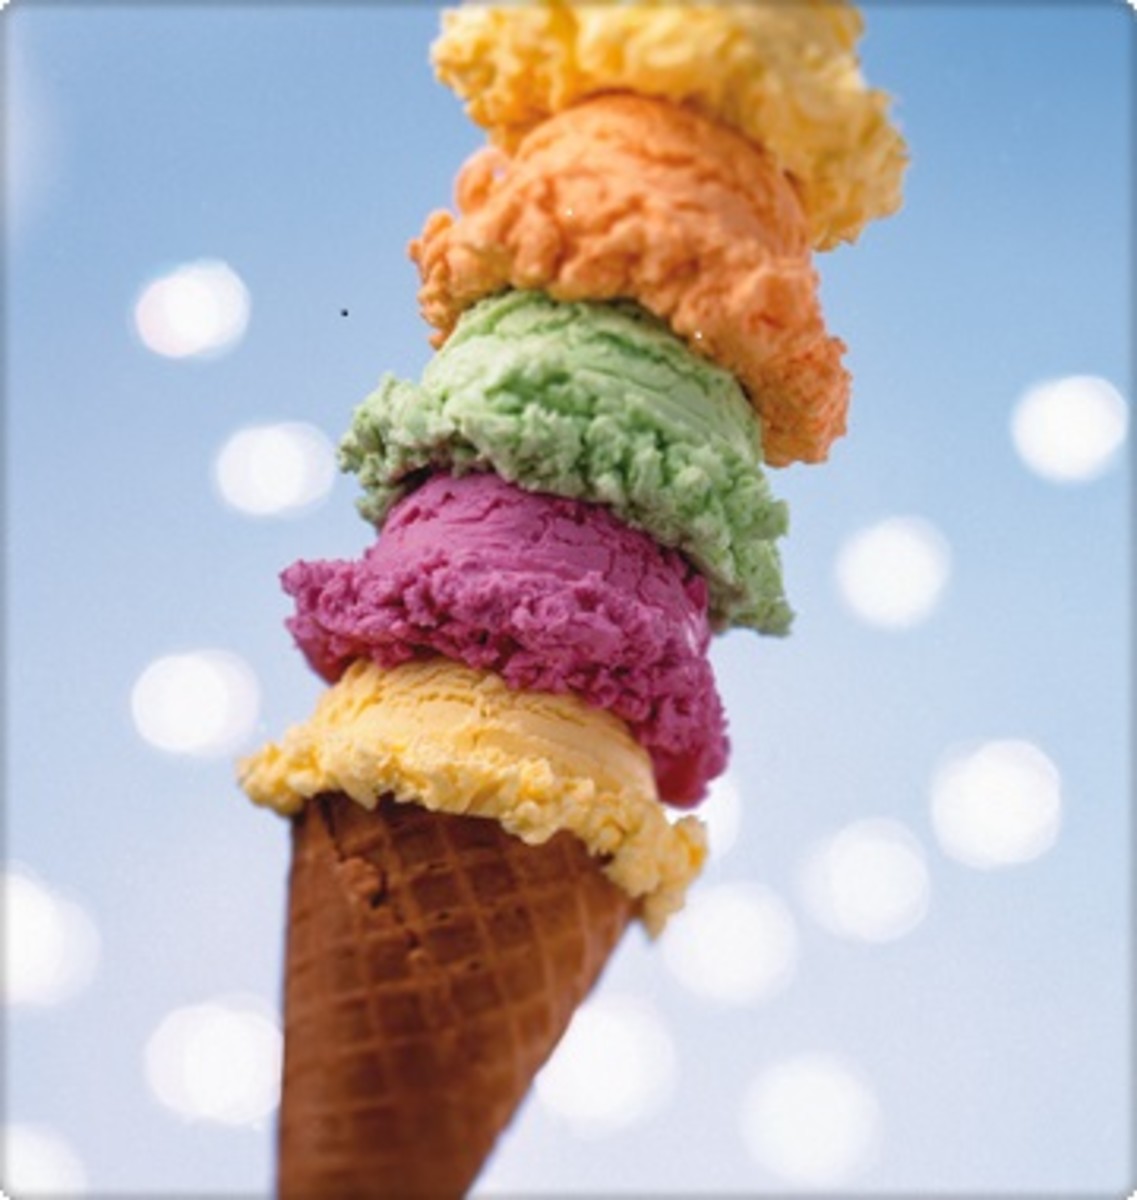 ice-cream-cone1